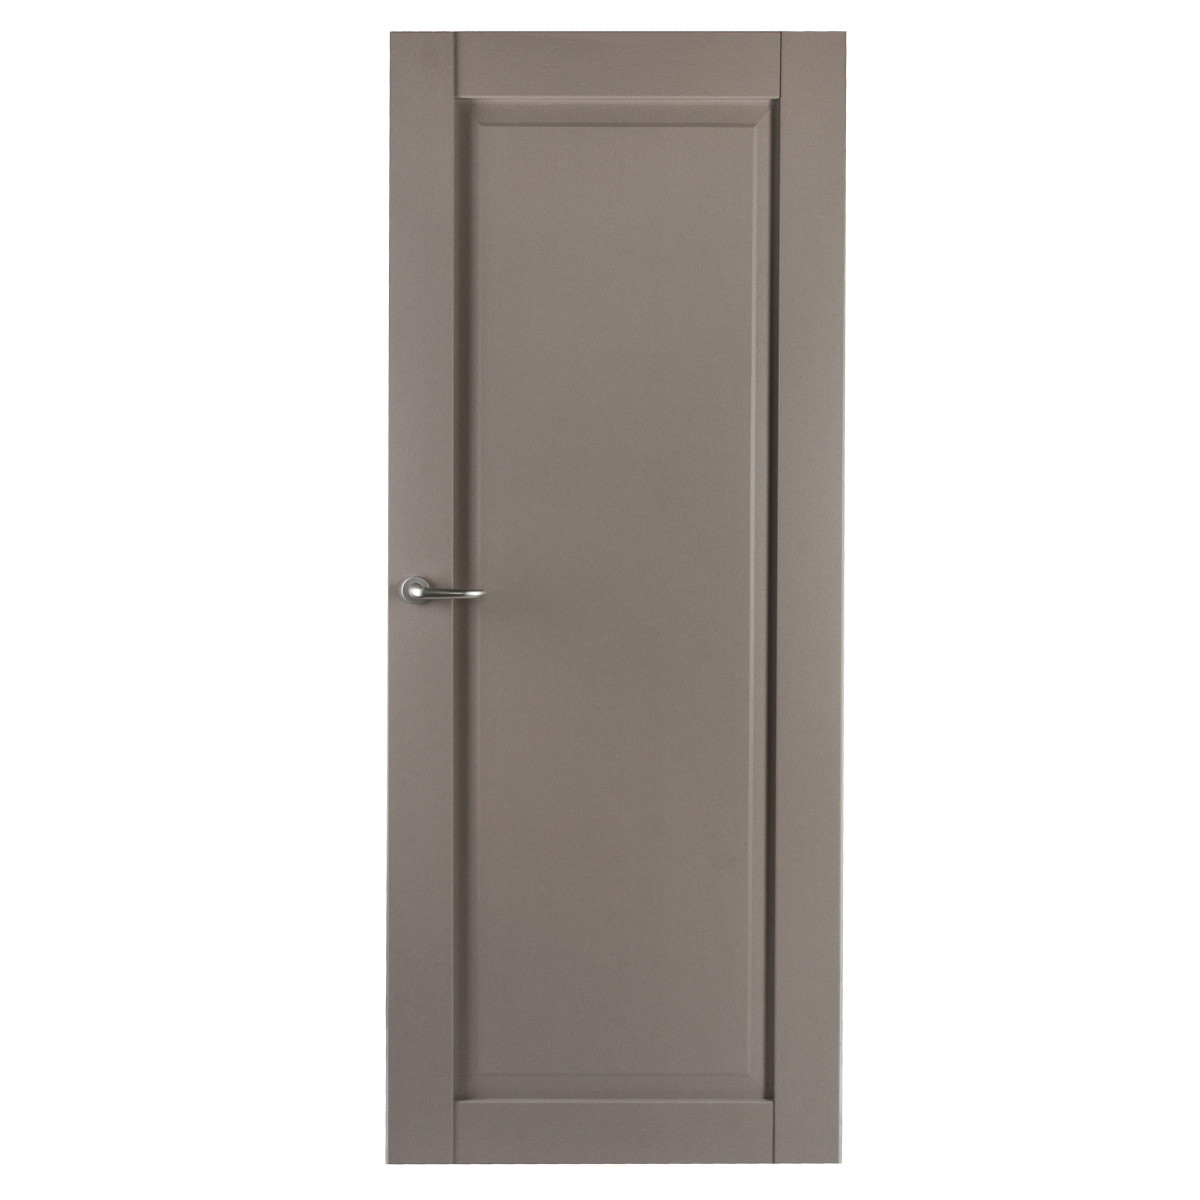 Дверь межкомнатная с фурнитурой Пьемонт 90х200 см, Hardflex, цвет платина светлая